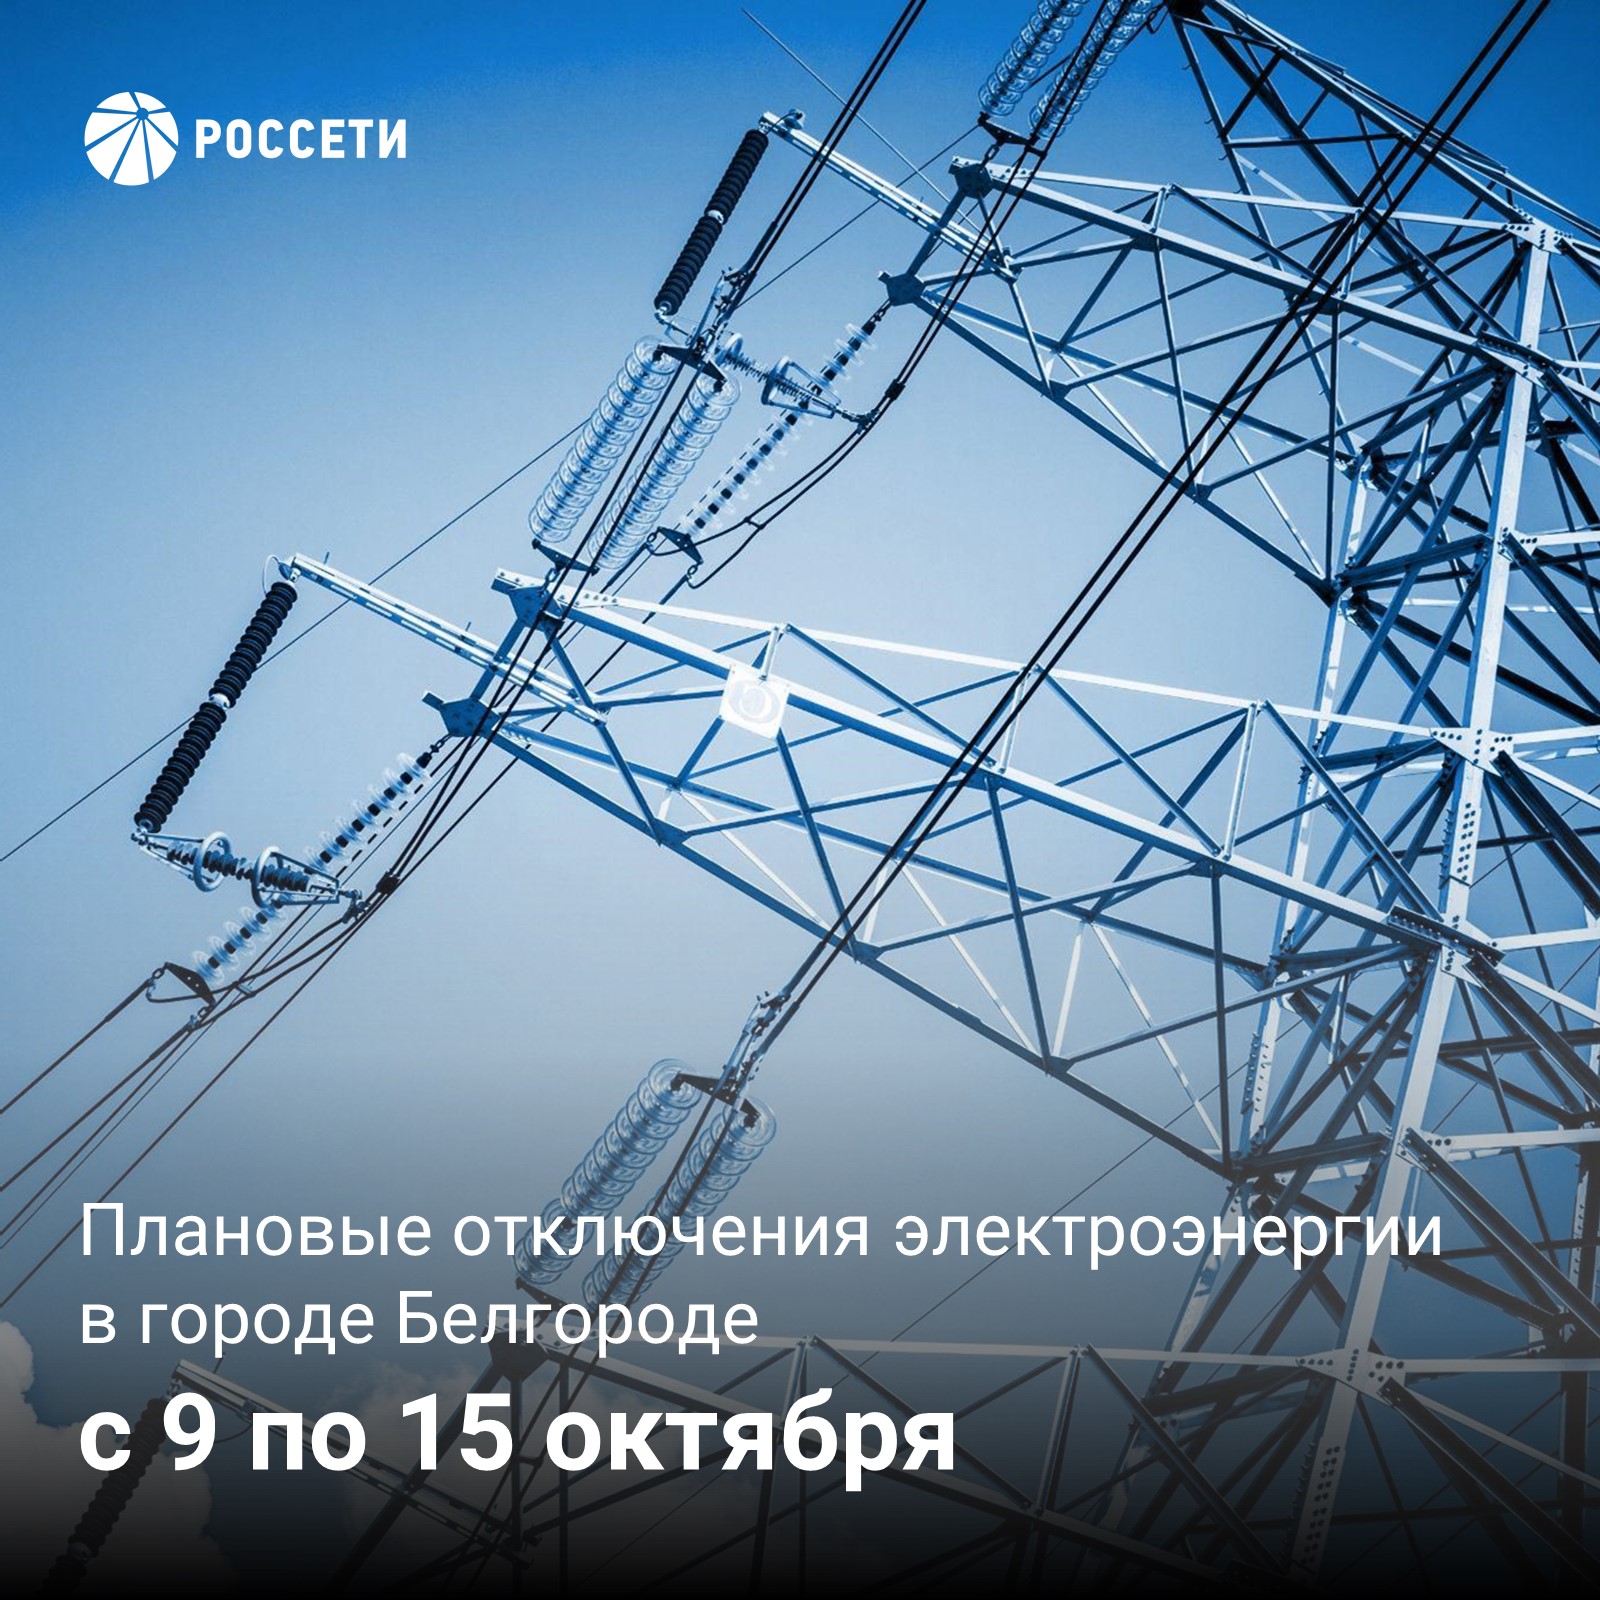 В Белгороде на следующей неделе пройдут плановые отключения электроэнергии.